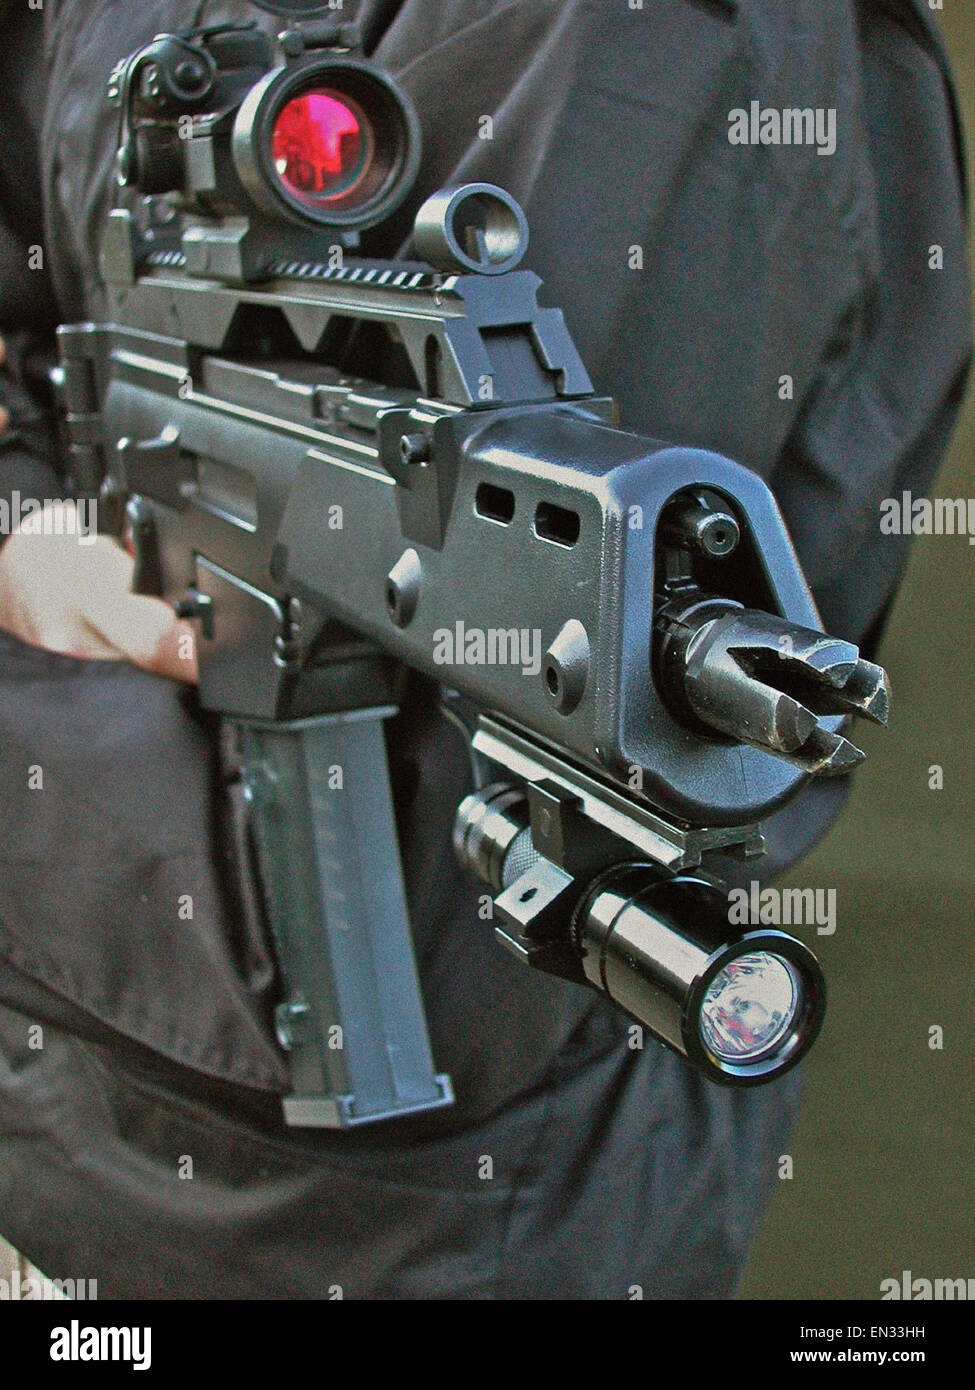 Ein Heckler & Koch G36 C (5,56 mm x 45 NATO Kaliber Gas betriebenen Sturmgewehr) begünstigt durch die britischen Strafverfolgungsbehörden (Polizei). Es hat die Abmessungen einer Maschinenpistole, kombiniert mit der Fähigkeit, Eindringen von 5,56 NATO-Kaliber. Stockfoto